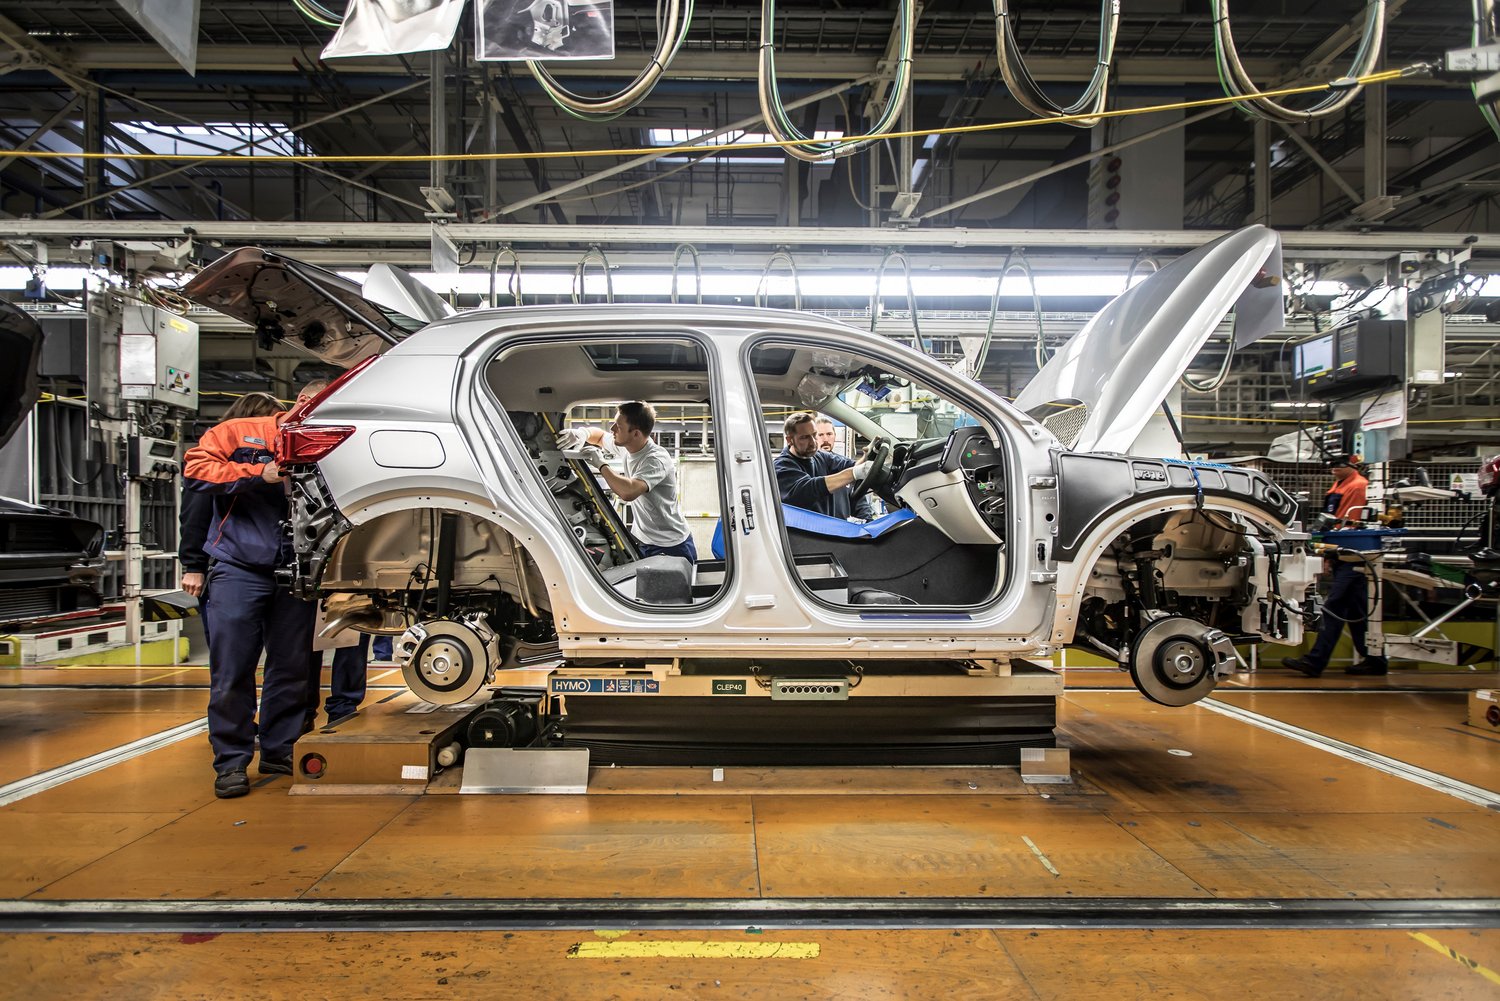 Megkezdődött a legfontosabb Volvo szériagyártása 16